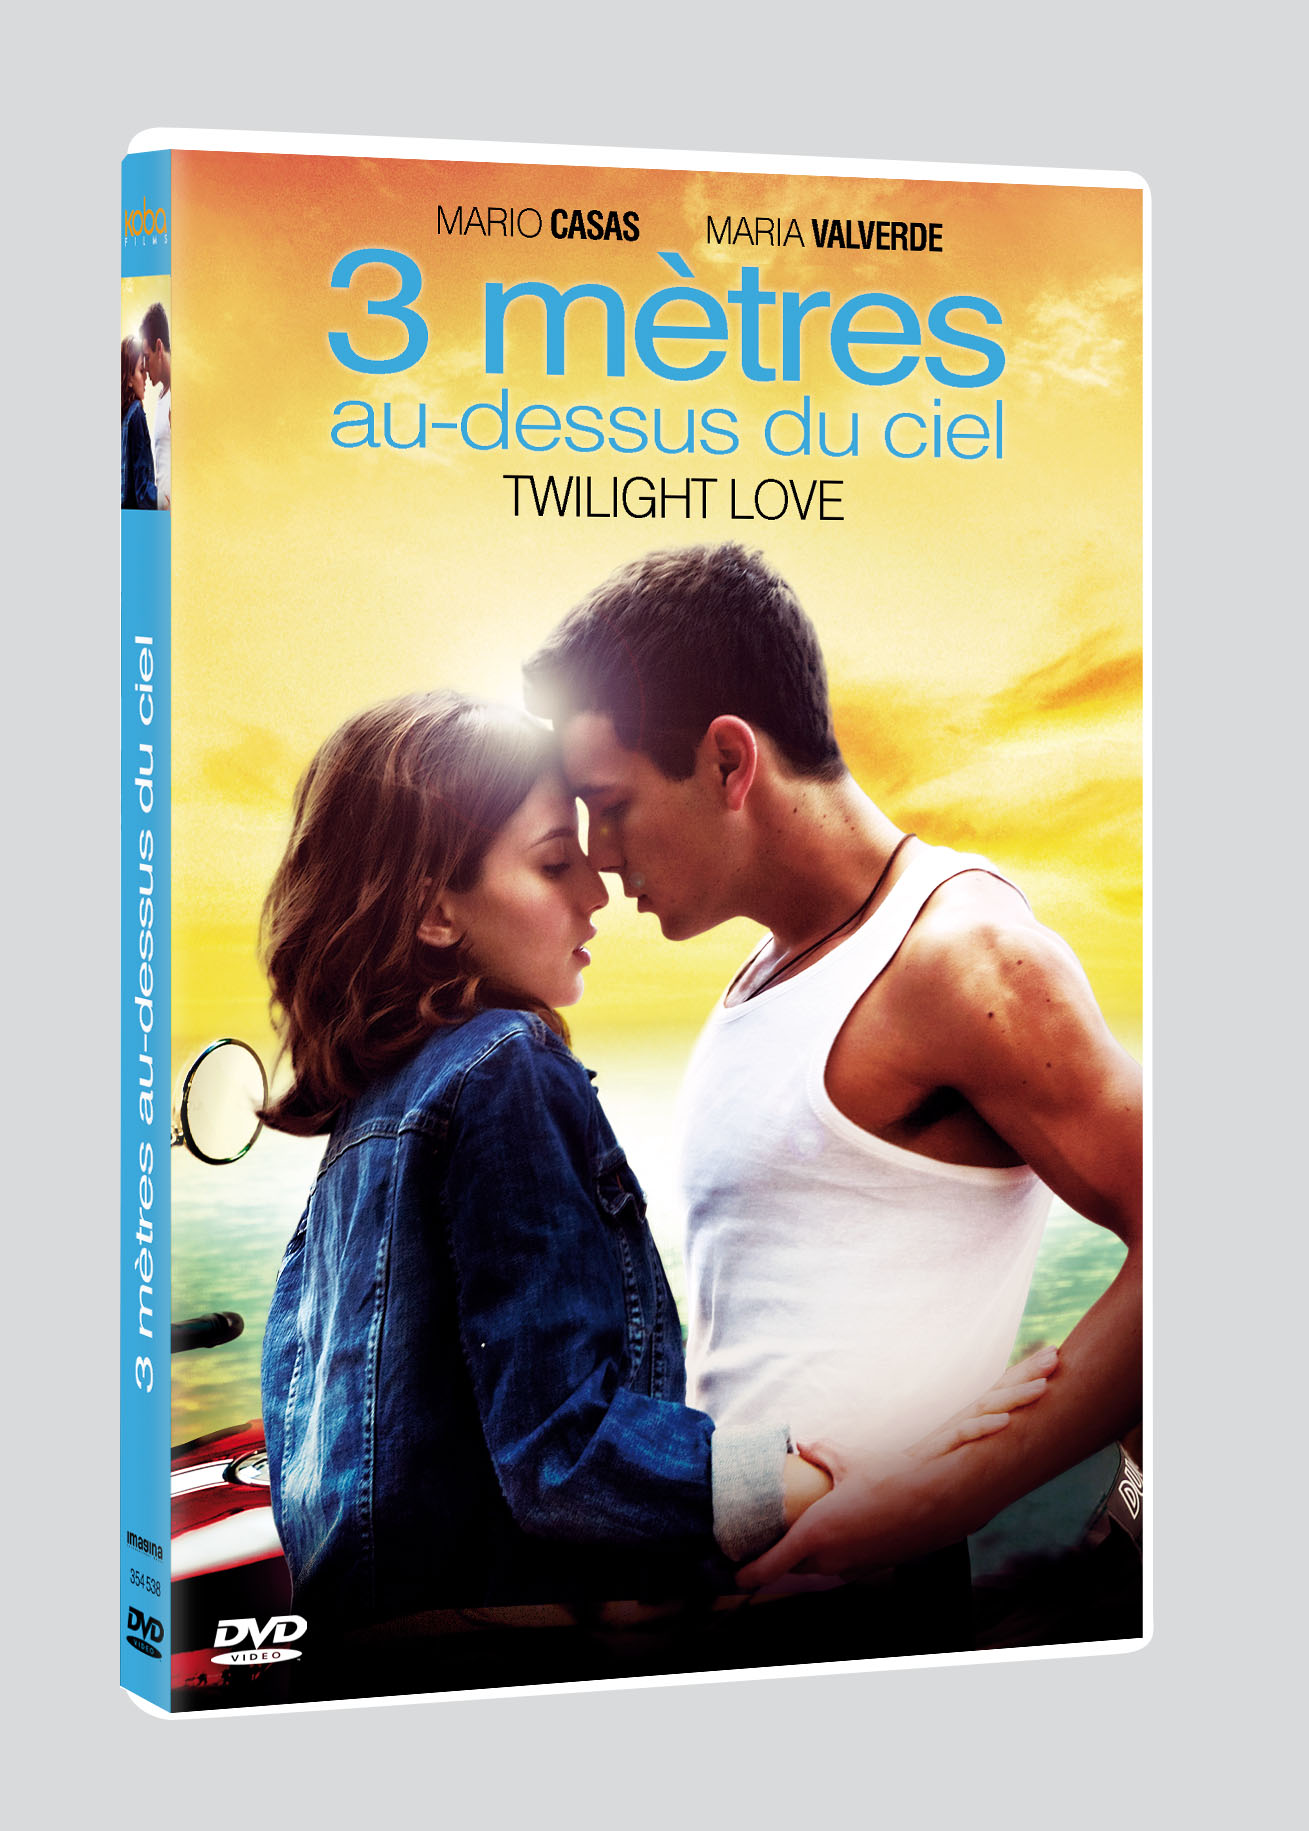 3 Metre Au dessus Du Ciel 2 Streaming Vf 3 METRES AU-DESSUS DU CIEL - TWILIGHT LOVE 1 - DVD - ESC Editions &  Distribution